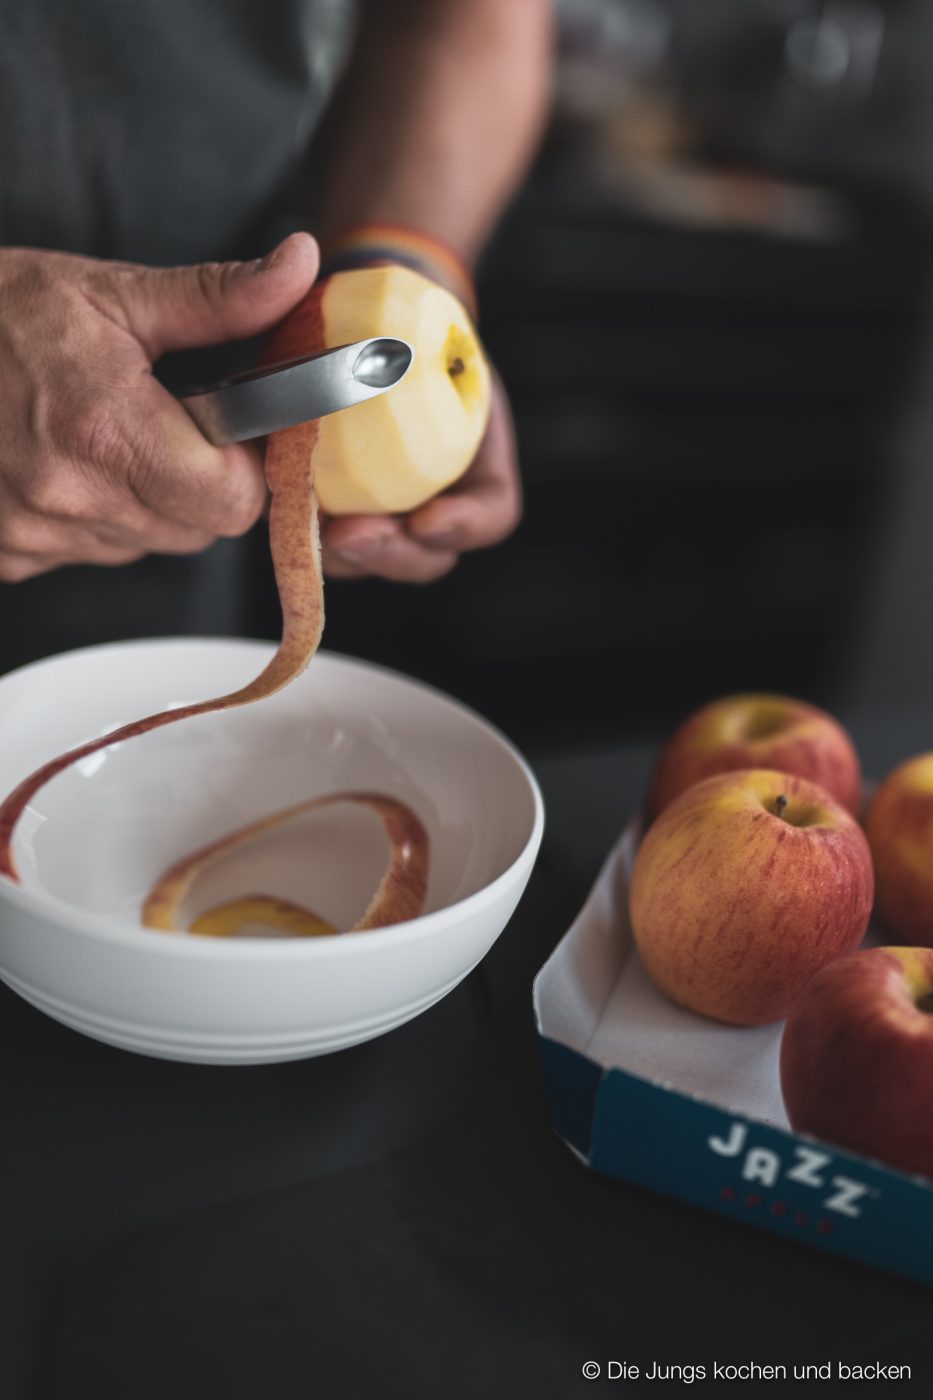 Apple Bites jazz apfel 13 | Kennt ihr das auch? Ihr seid bei der Arbeit, habt mittags nur etwas Kleines gegessen, weil es einfach viel zu heiß war, um sich den Bauch vollzuschlagen und dann kommt der Hunger ganz überraschend. Da greift man dann gerne zu einem Schokoriegel, Kuchen oder Co. Aber jetzt haben wir ein neues Rezept ausprobiert. Unsere Apfel Protein Happen sind der perfekte Snack für zwischendurch - egal ob im Büro, zu Hause oder unterwegs. Meal Prep in Bestform würden wir sagen!